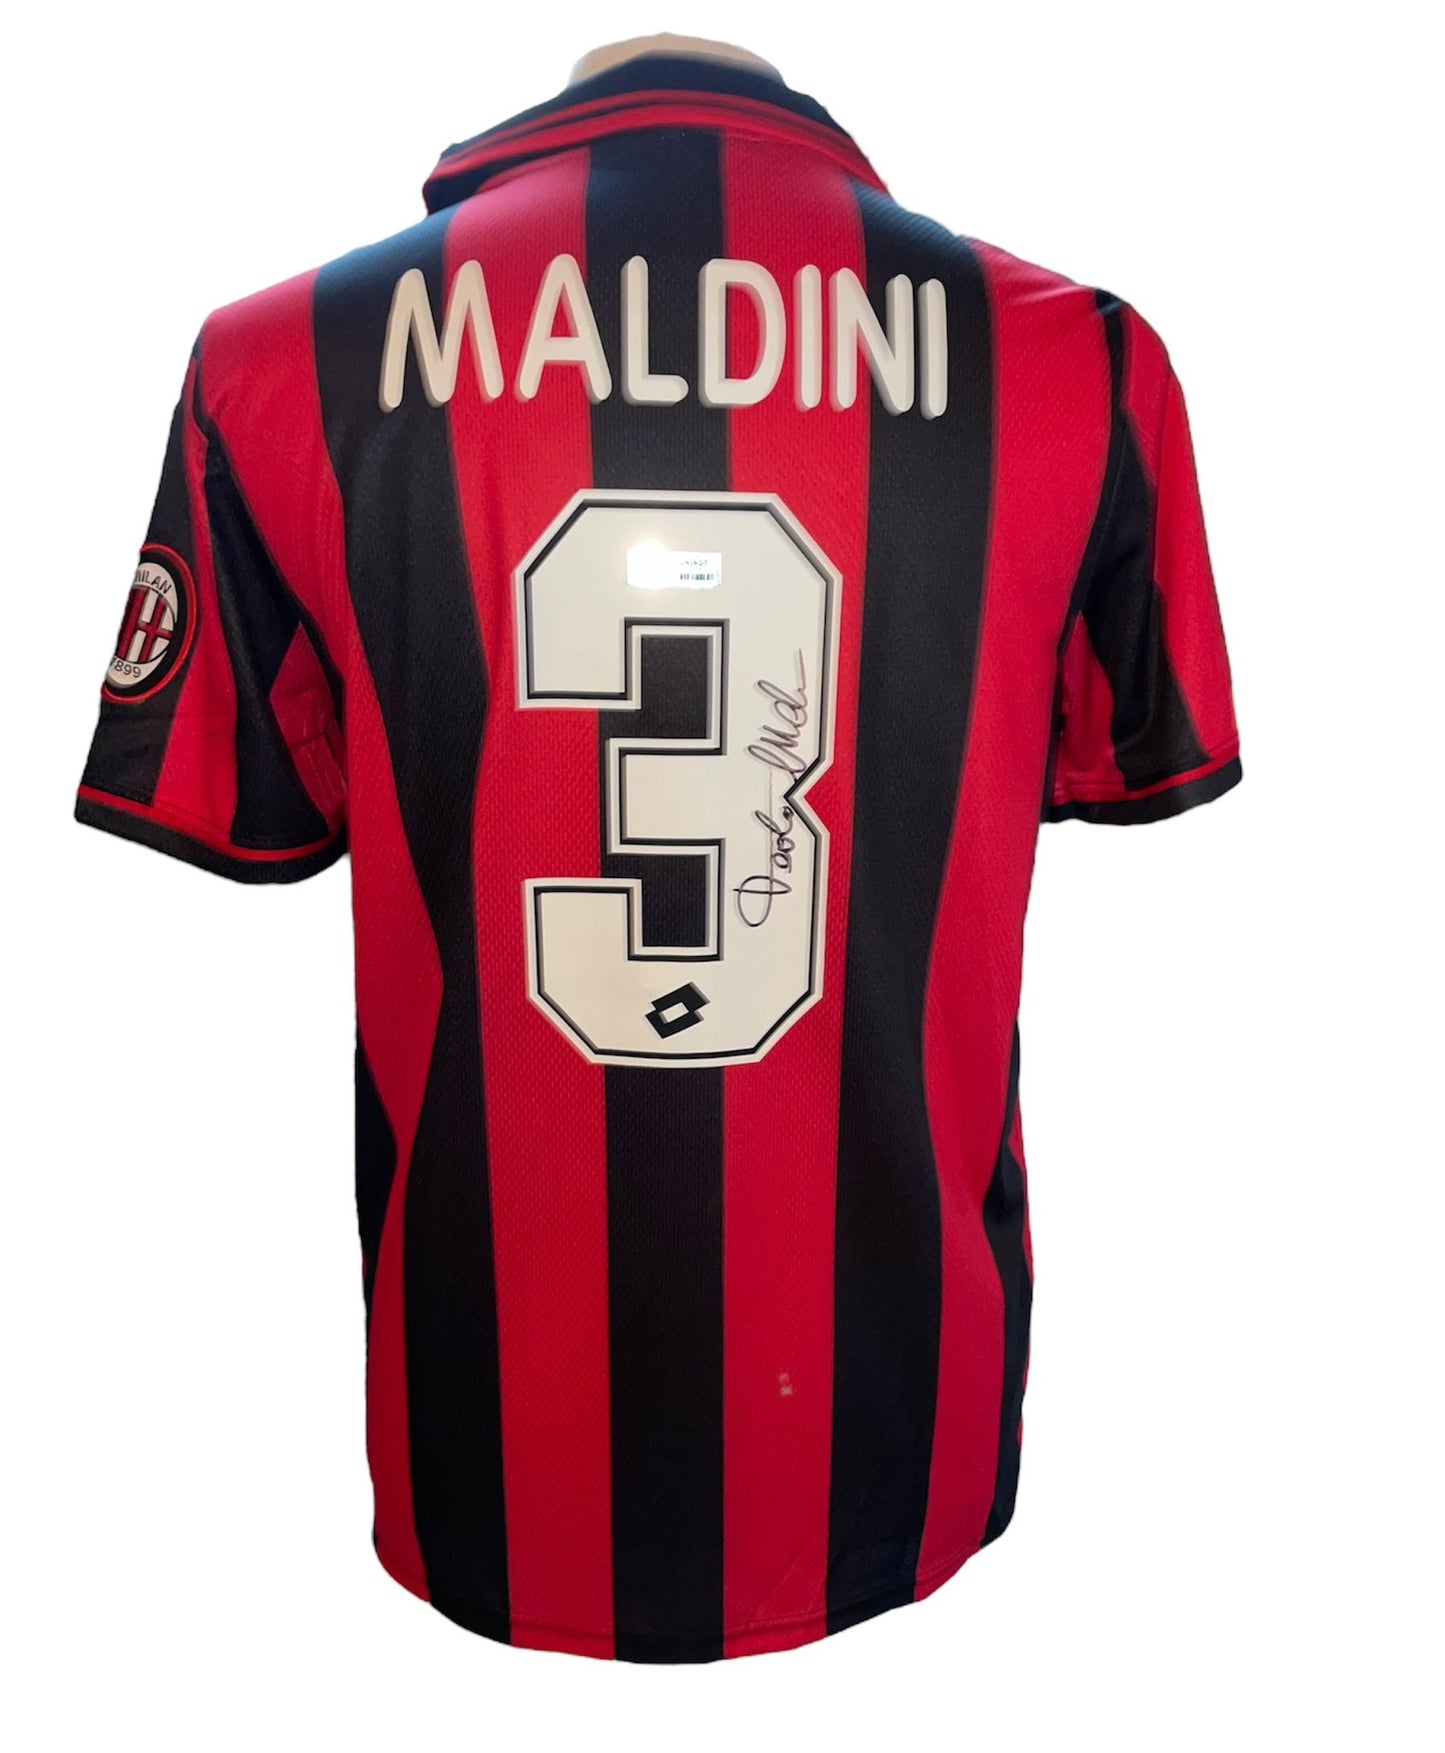 Paolo Maldini gesigneerd AC Milan 1995-1996 shirt met certificaat